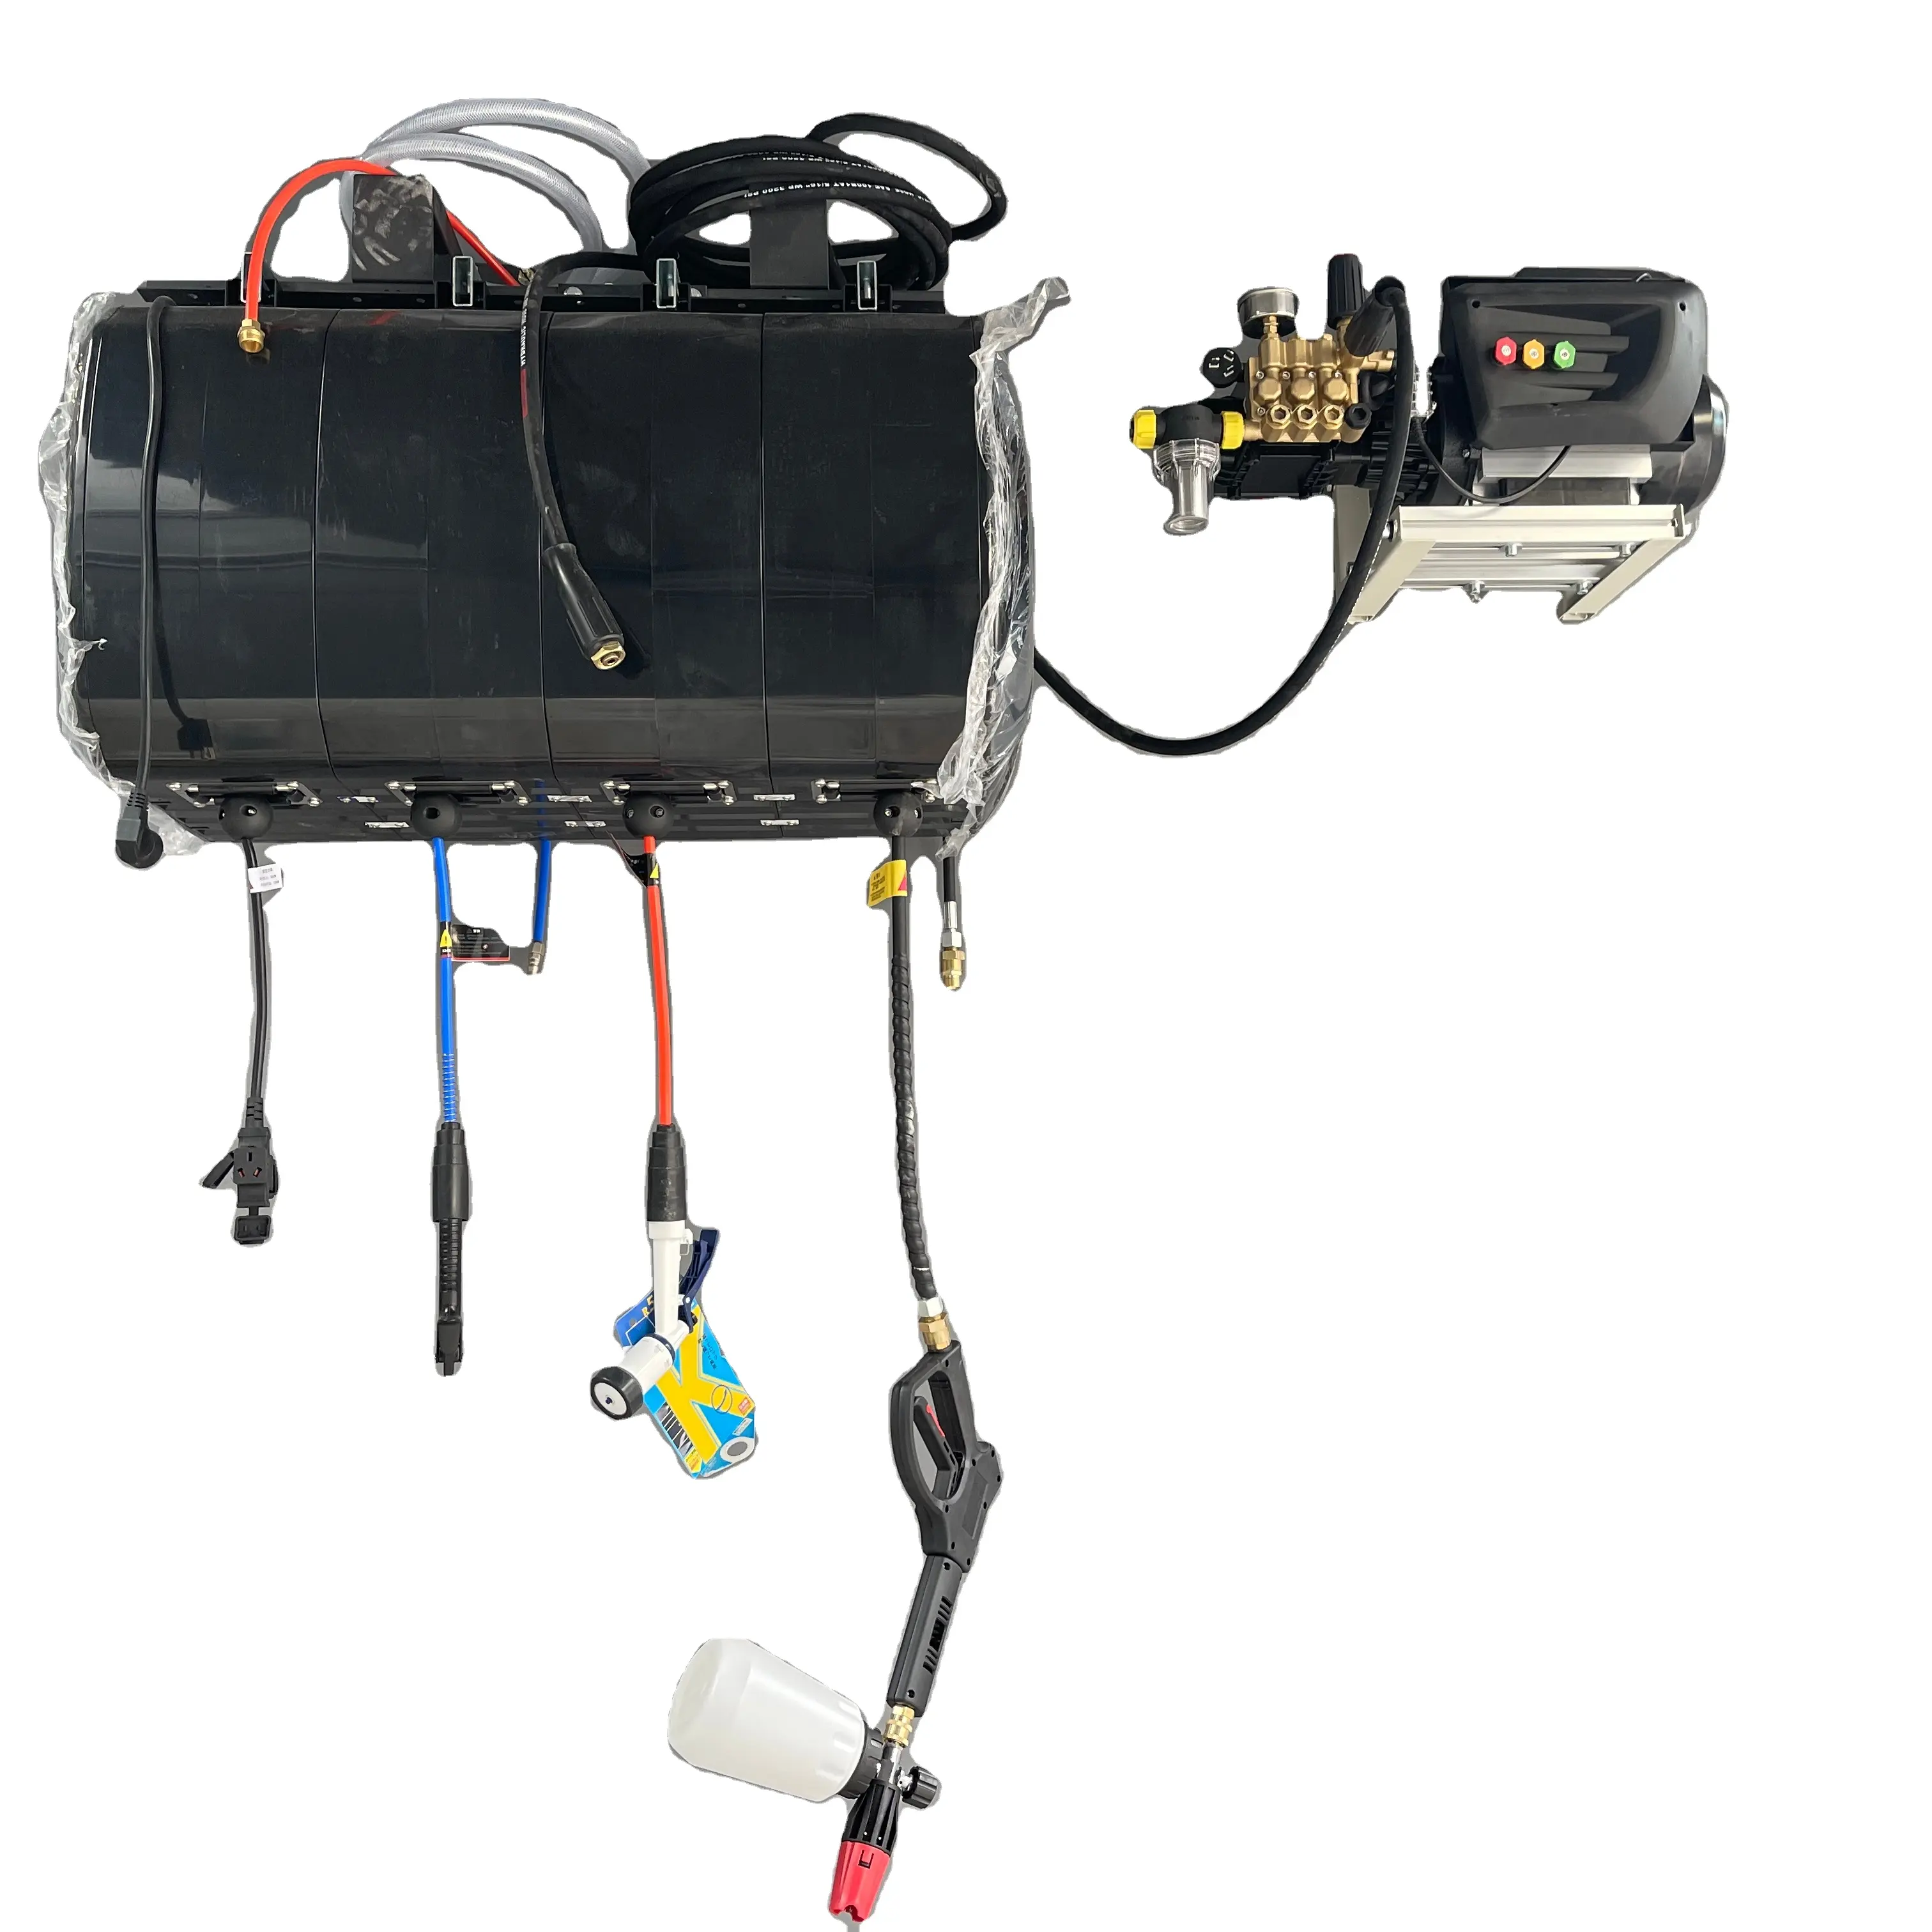 केएलएलबी सिंगल नली इलेक्ट्रिक/पानी/उच्च दबाव/वायु कार धोने की मरम्मत कार्यशाला का विवरण देते हुए उपकरण दबाव वॉशर नली रील